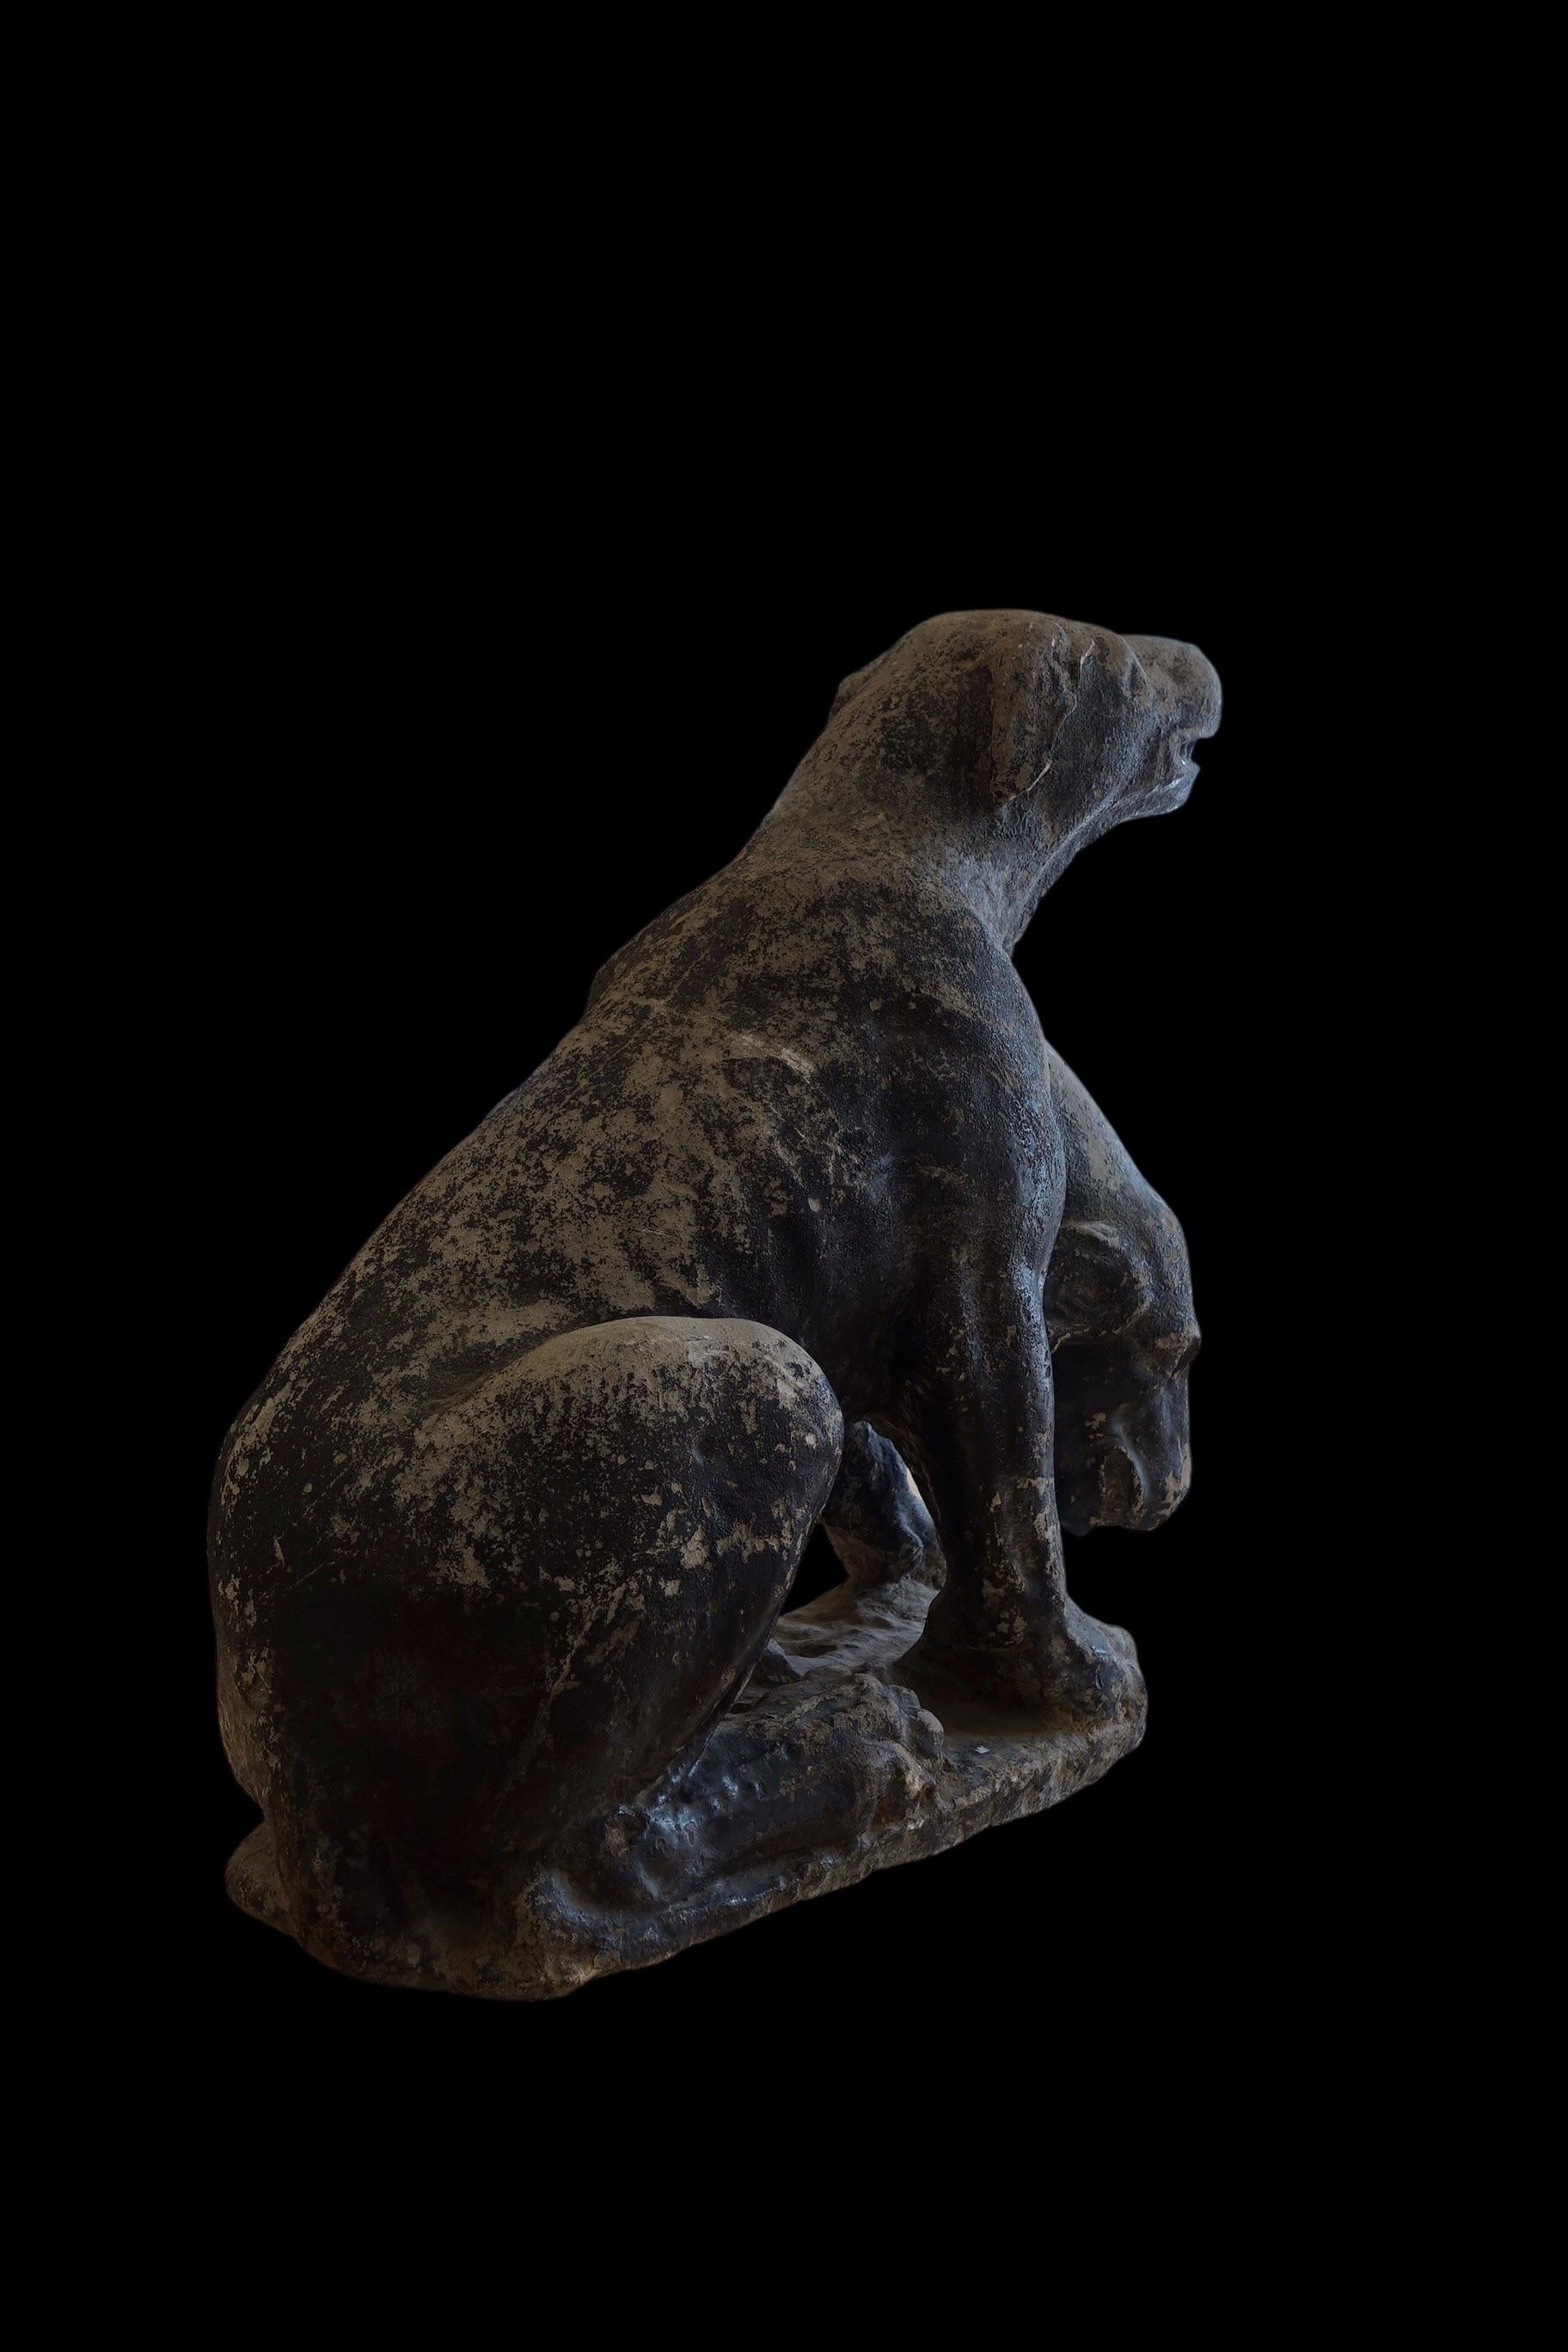 Cerberus
Schwarz lackierter Stein
Italien, 17. Jahrhundert
Maße: 80 x 69 x 36cm
(ein Kopf fehlt)

Cerberus, grausames Ungeheuer, grimmig und seltsam,
Durch seine breite dreifache Kehle bellt wie ein Hund
Über die Menge, die unter der Erde